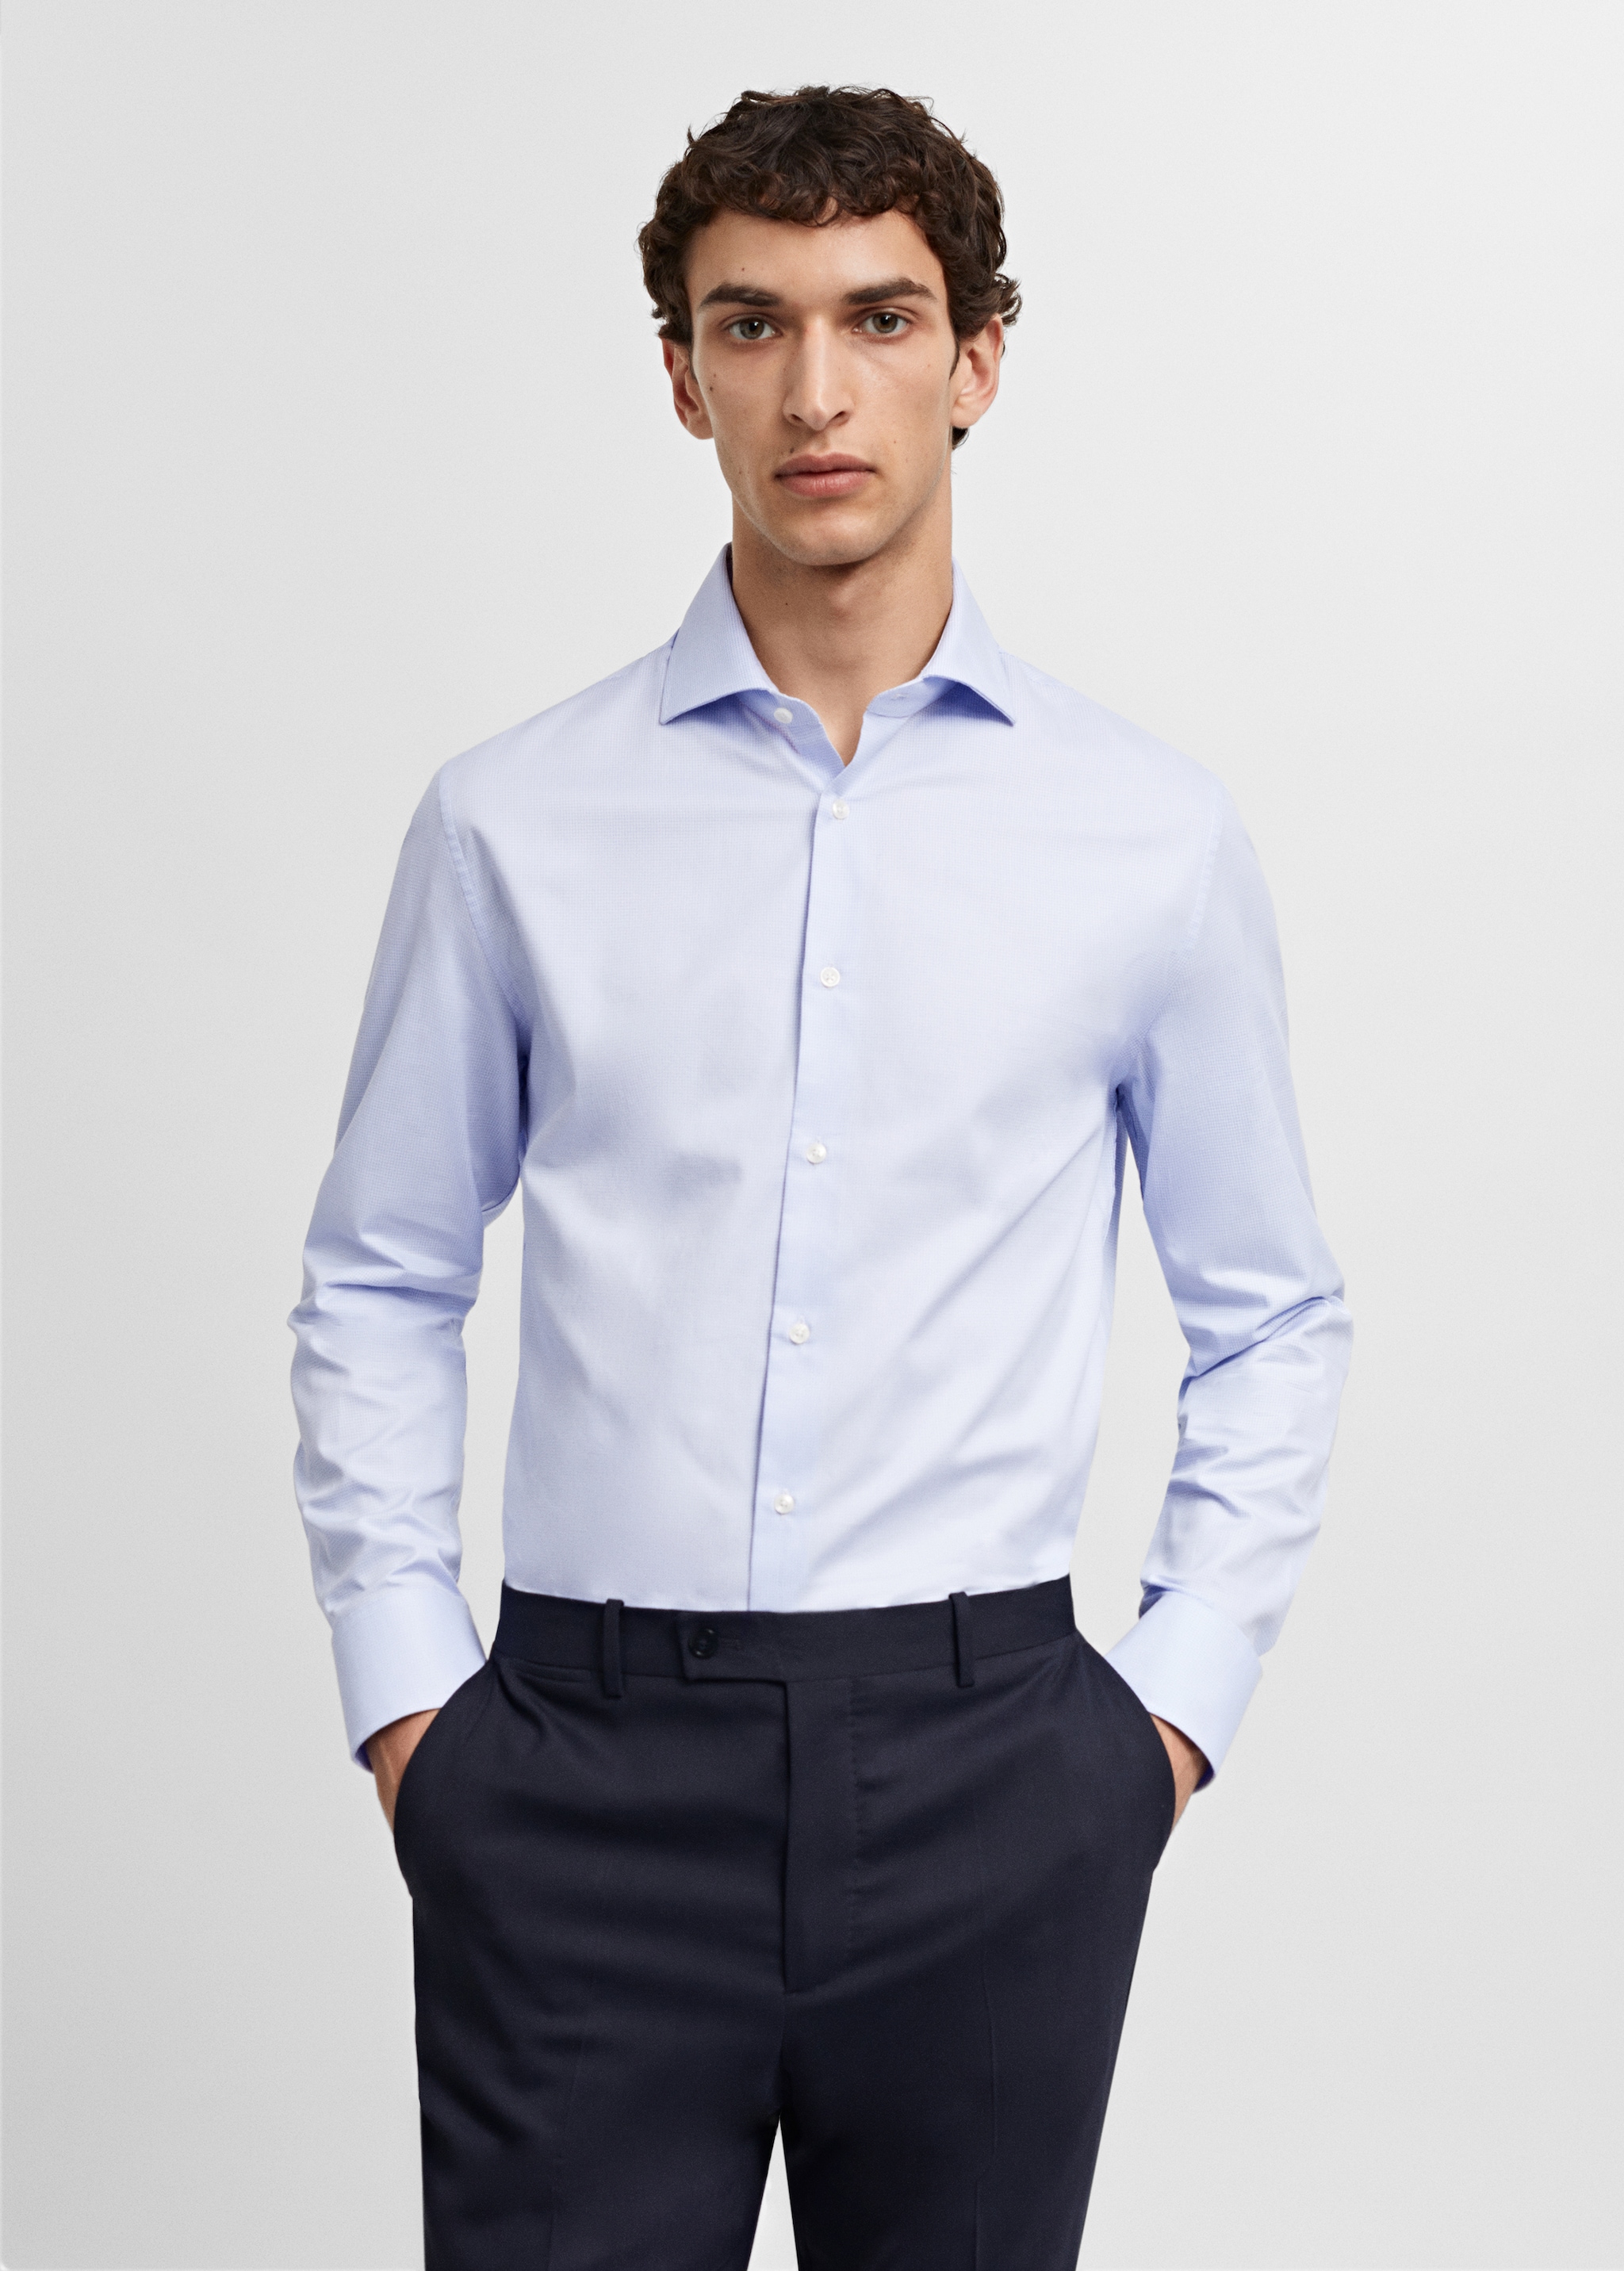 Slim fit structured suit shirt - Medium plane